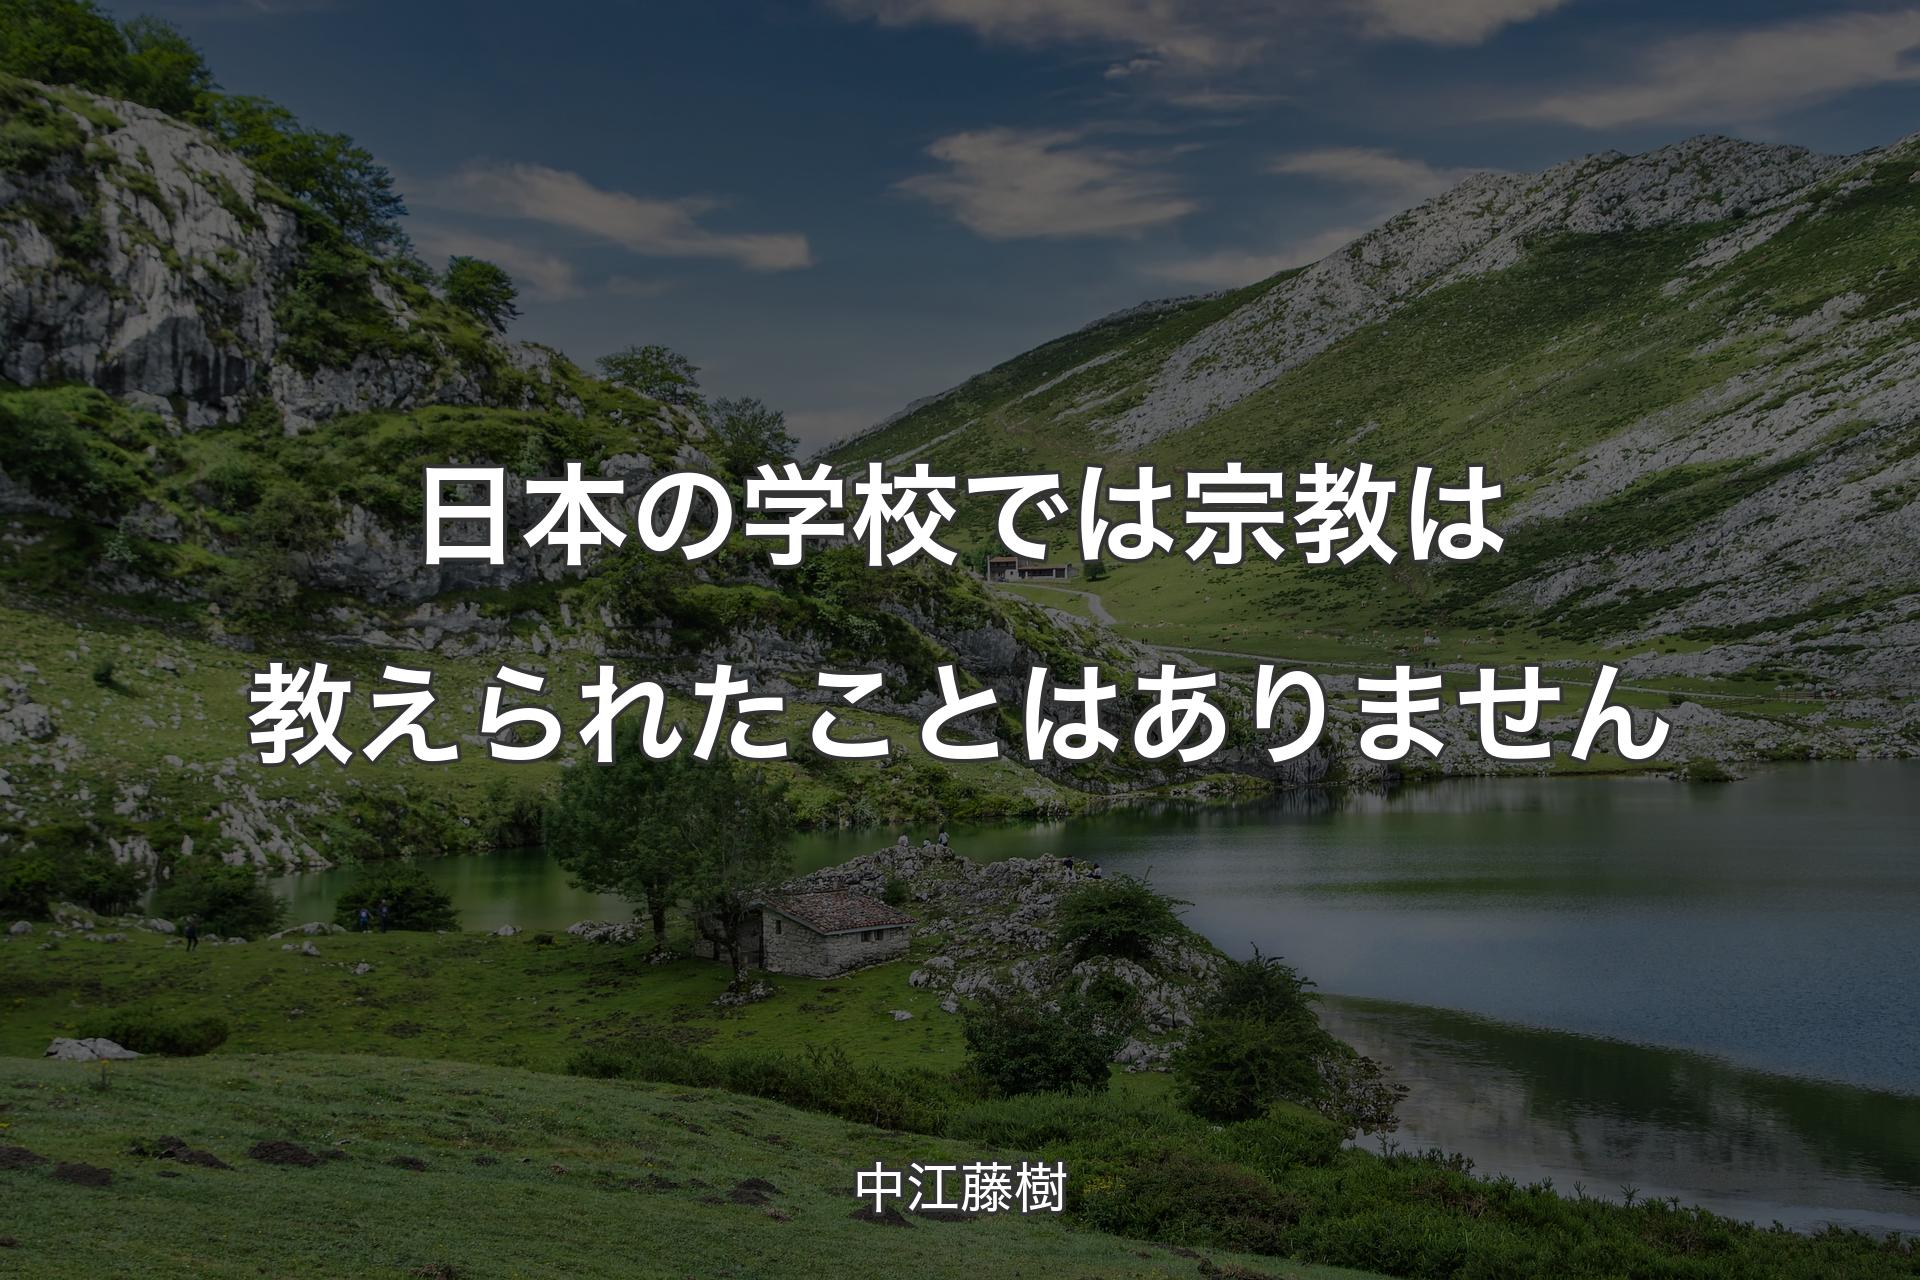 【背景1】日本の学校では宗教は教えられたことはありません - 中江藤樹